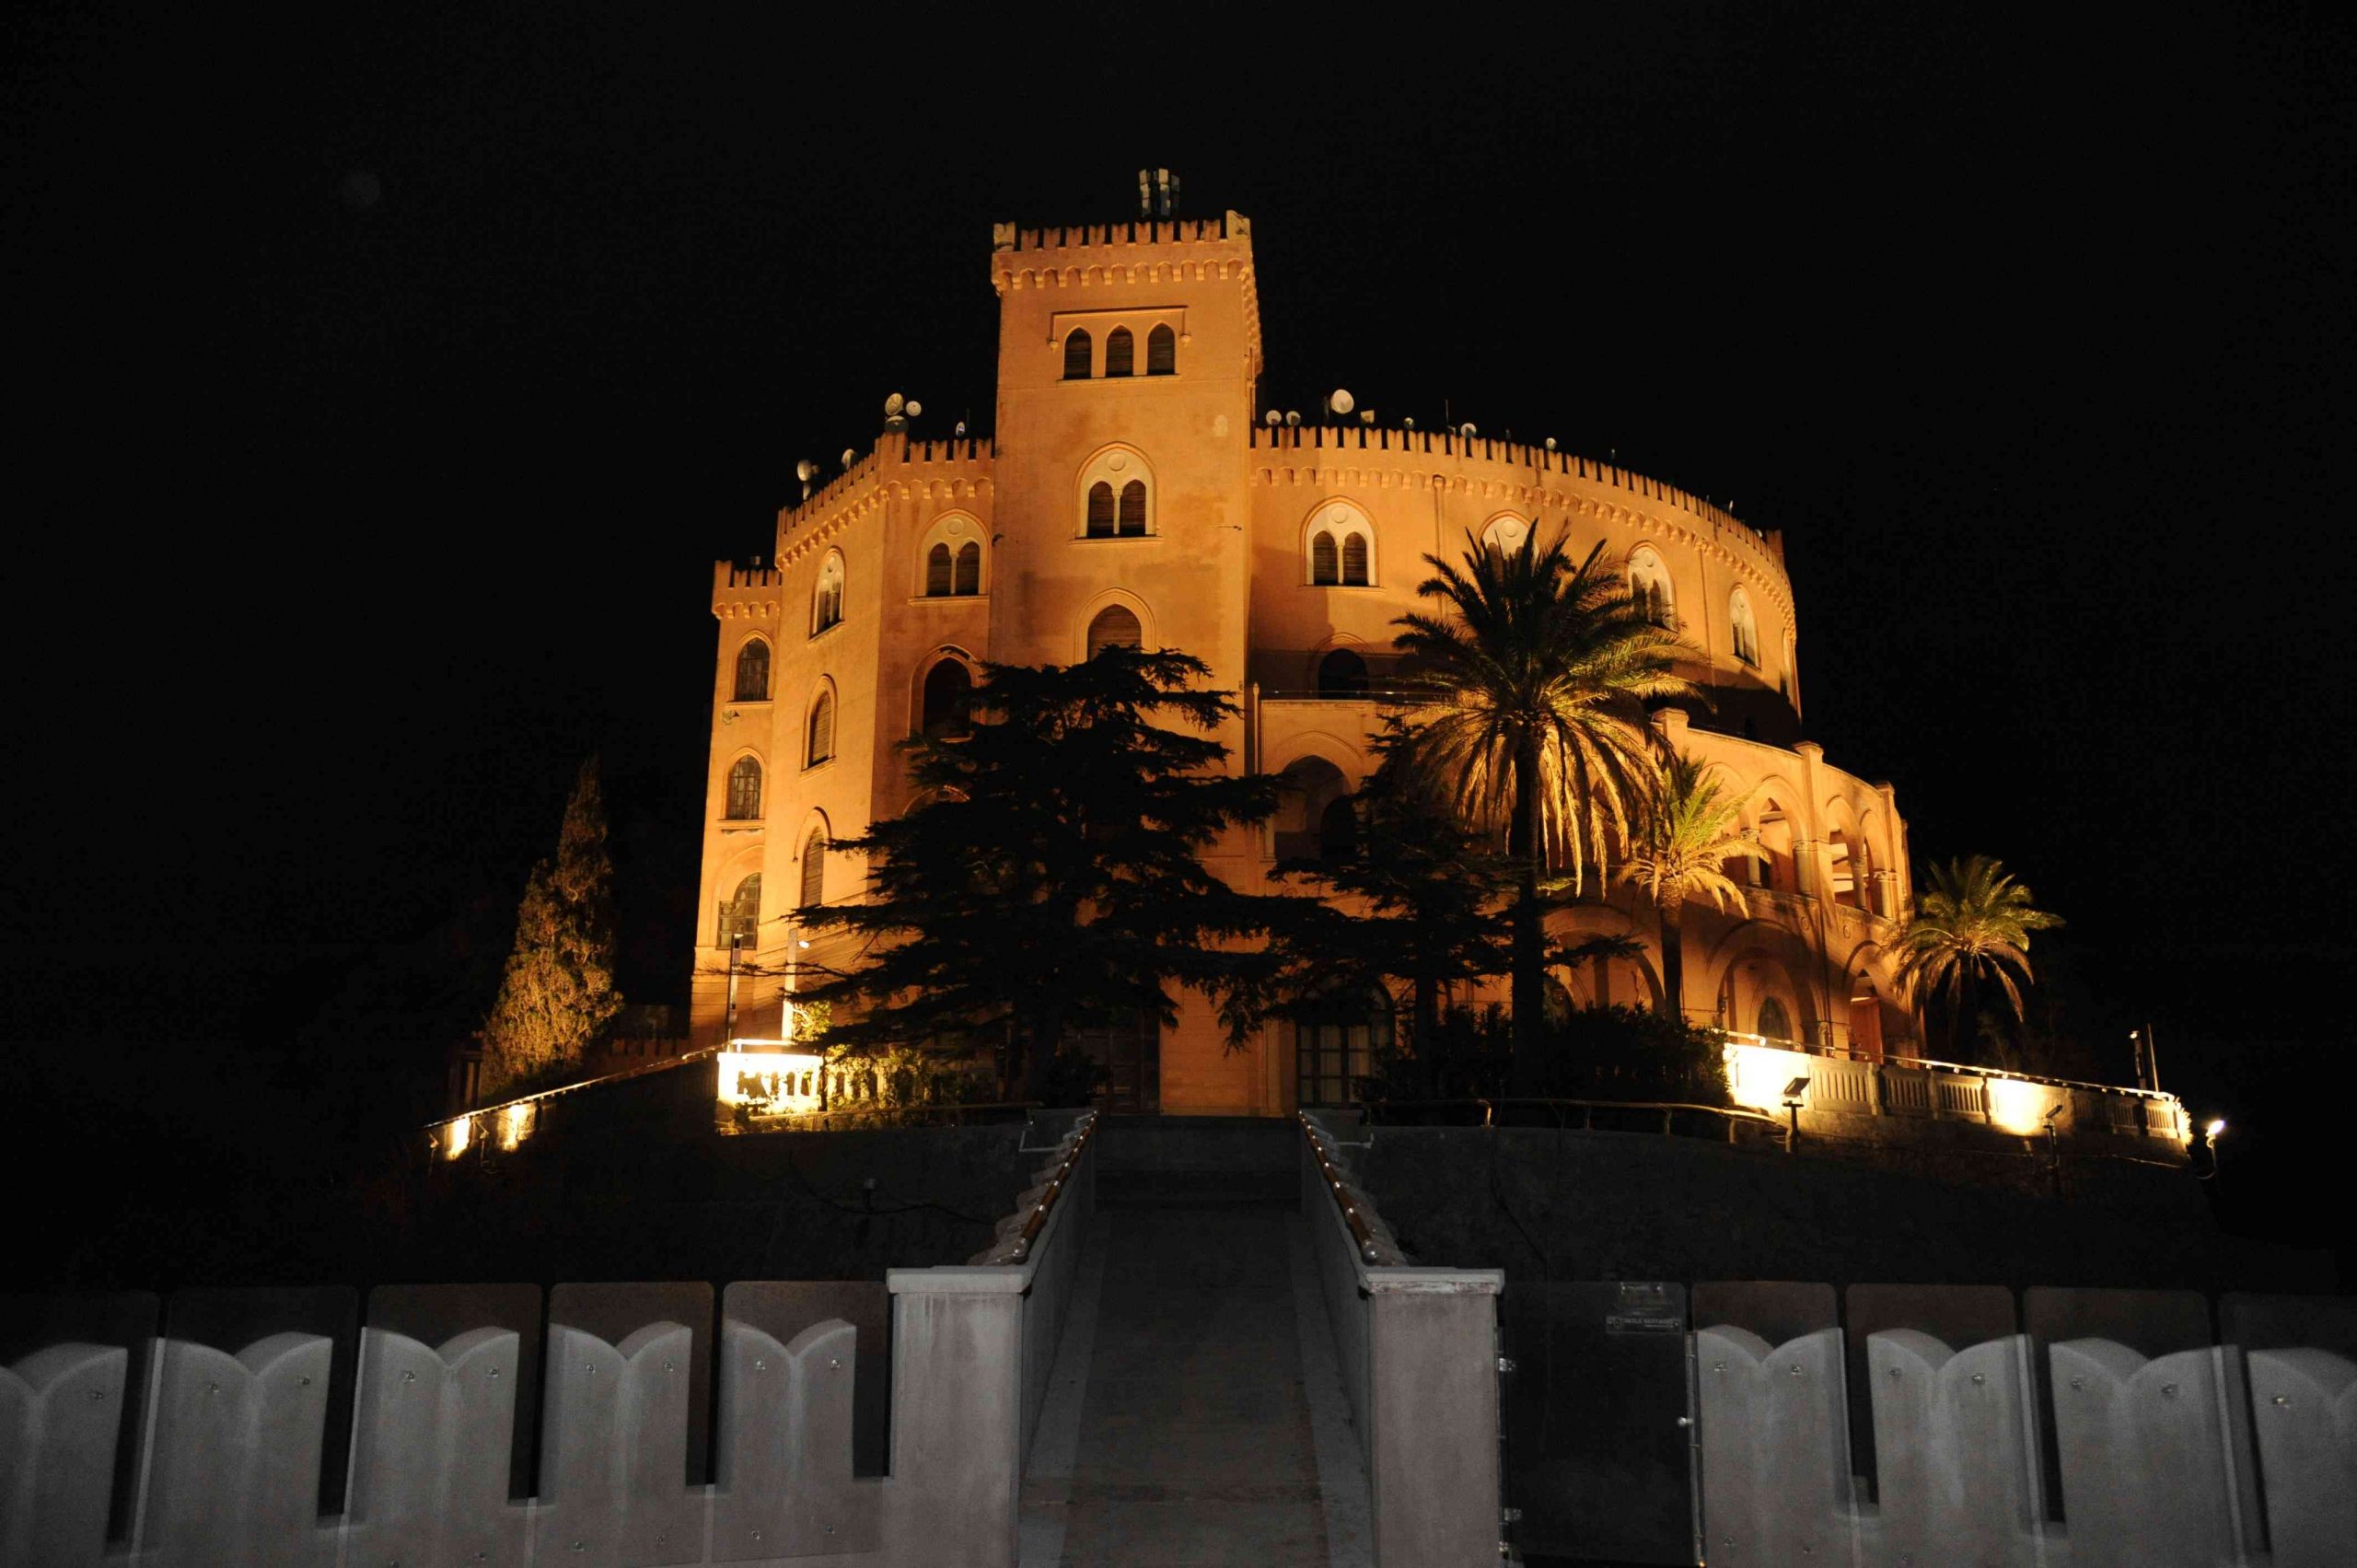 Piano di rilancio per Castello Utveggio, gestione diretta a Palazzo d’Orleans